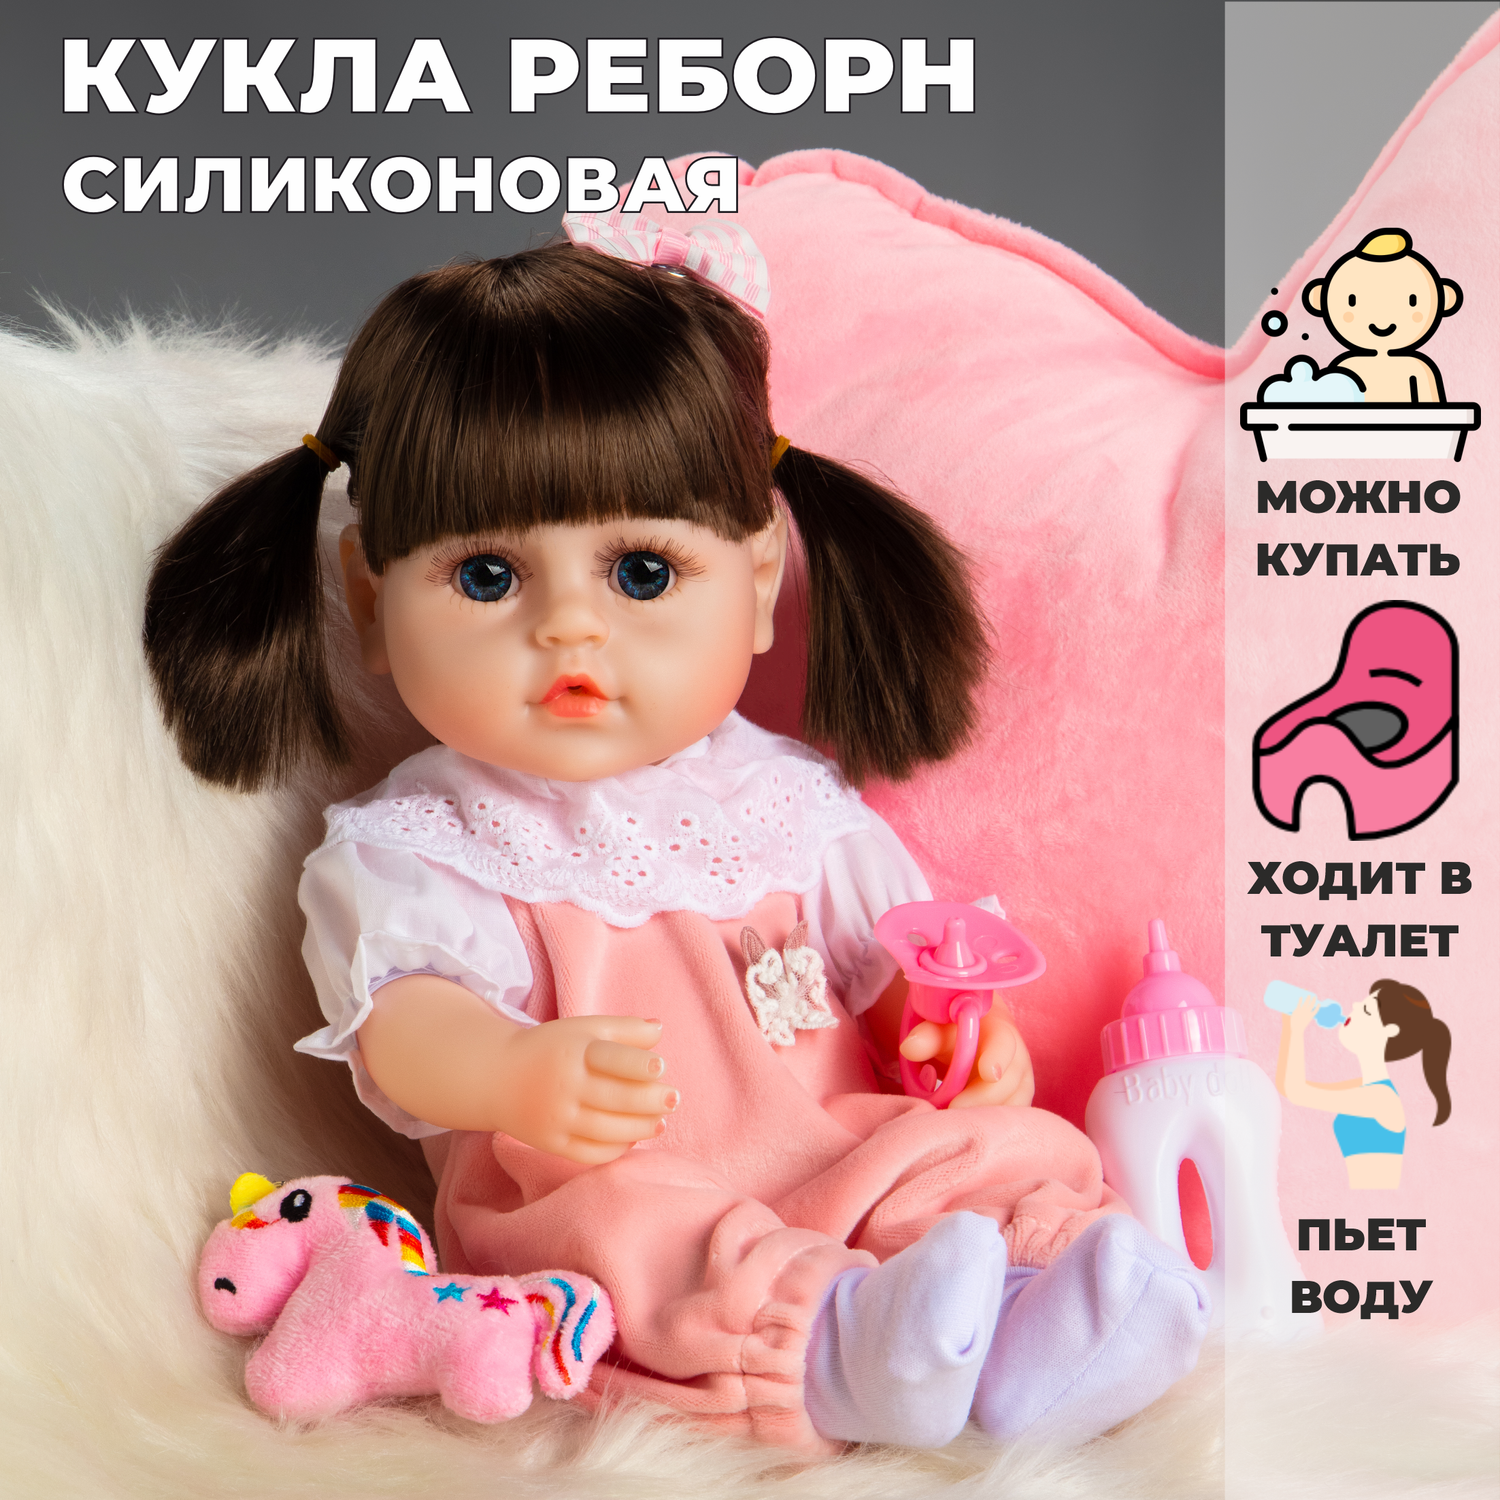 Искусственные младенцы, которые пугают: что такое куклы-реборны?